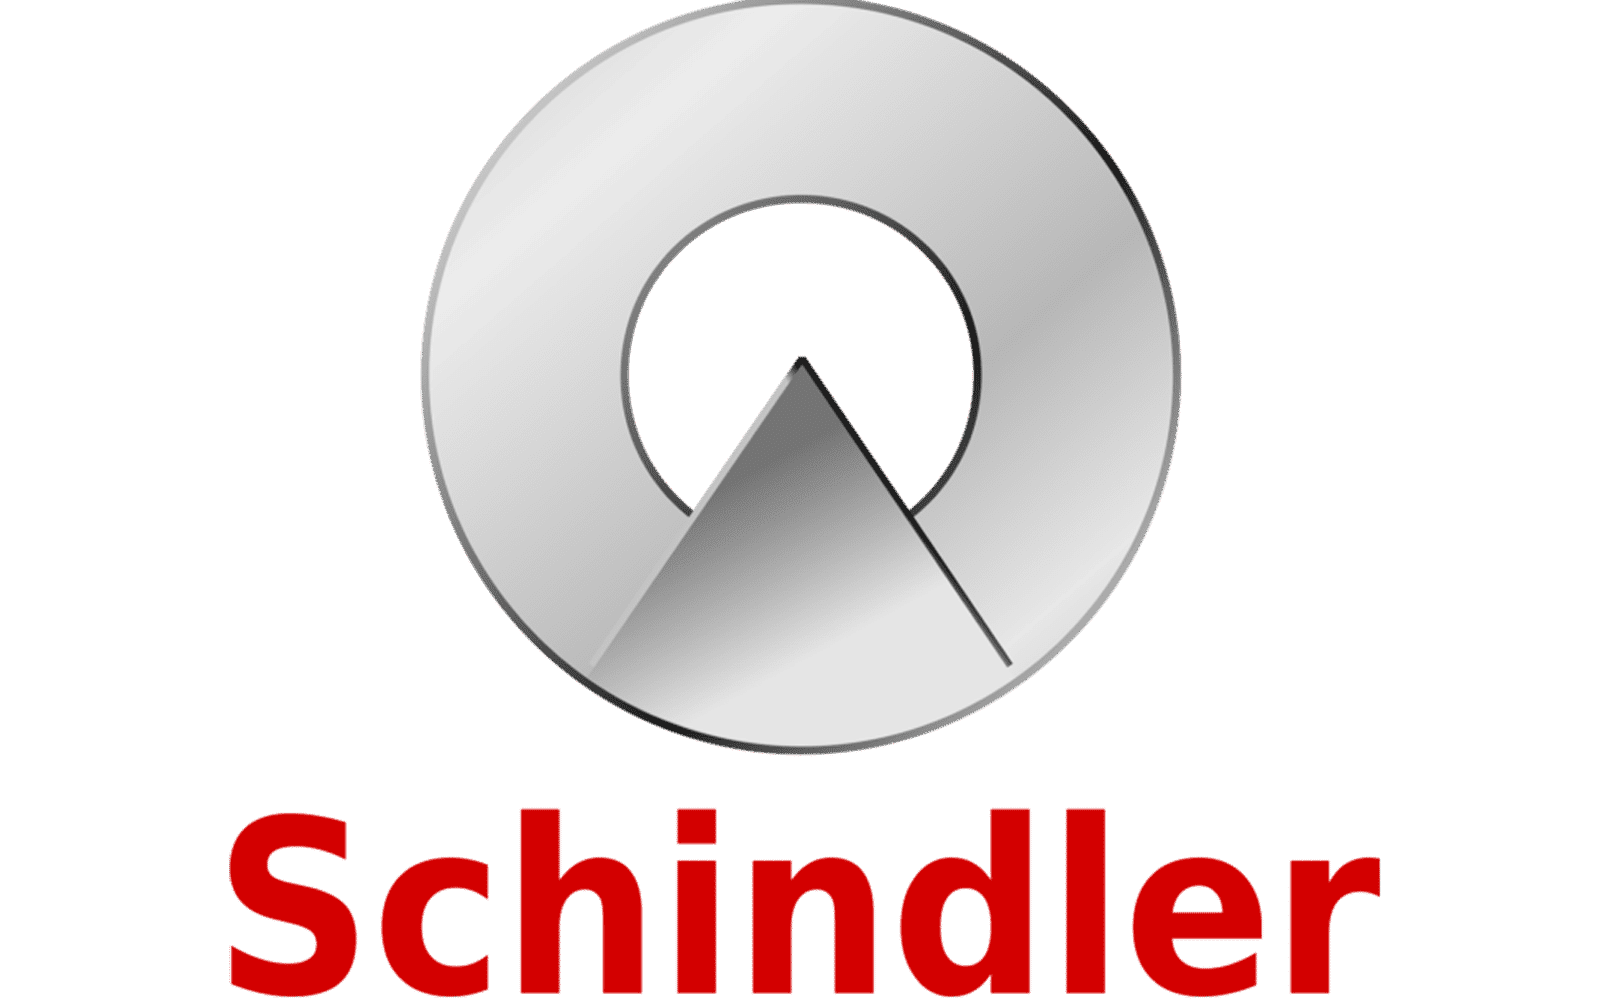 Schindler-Logo